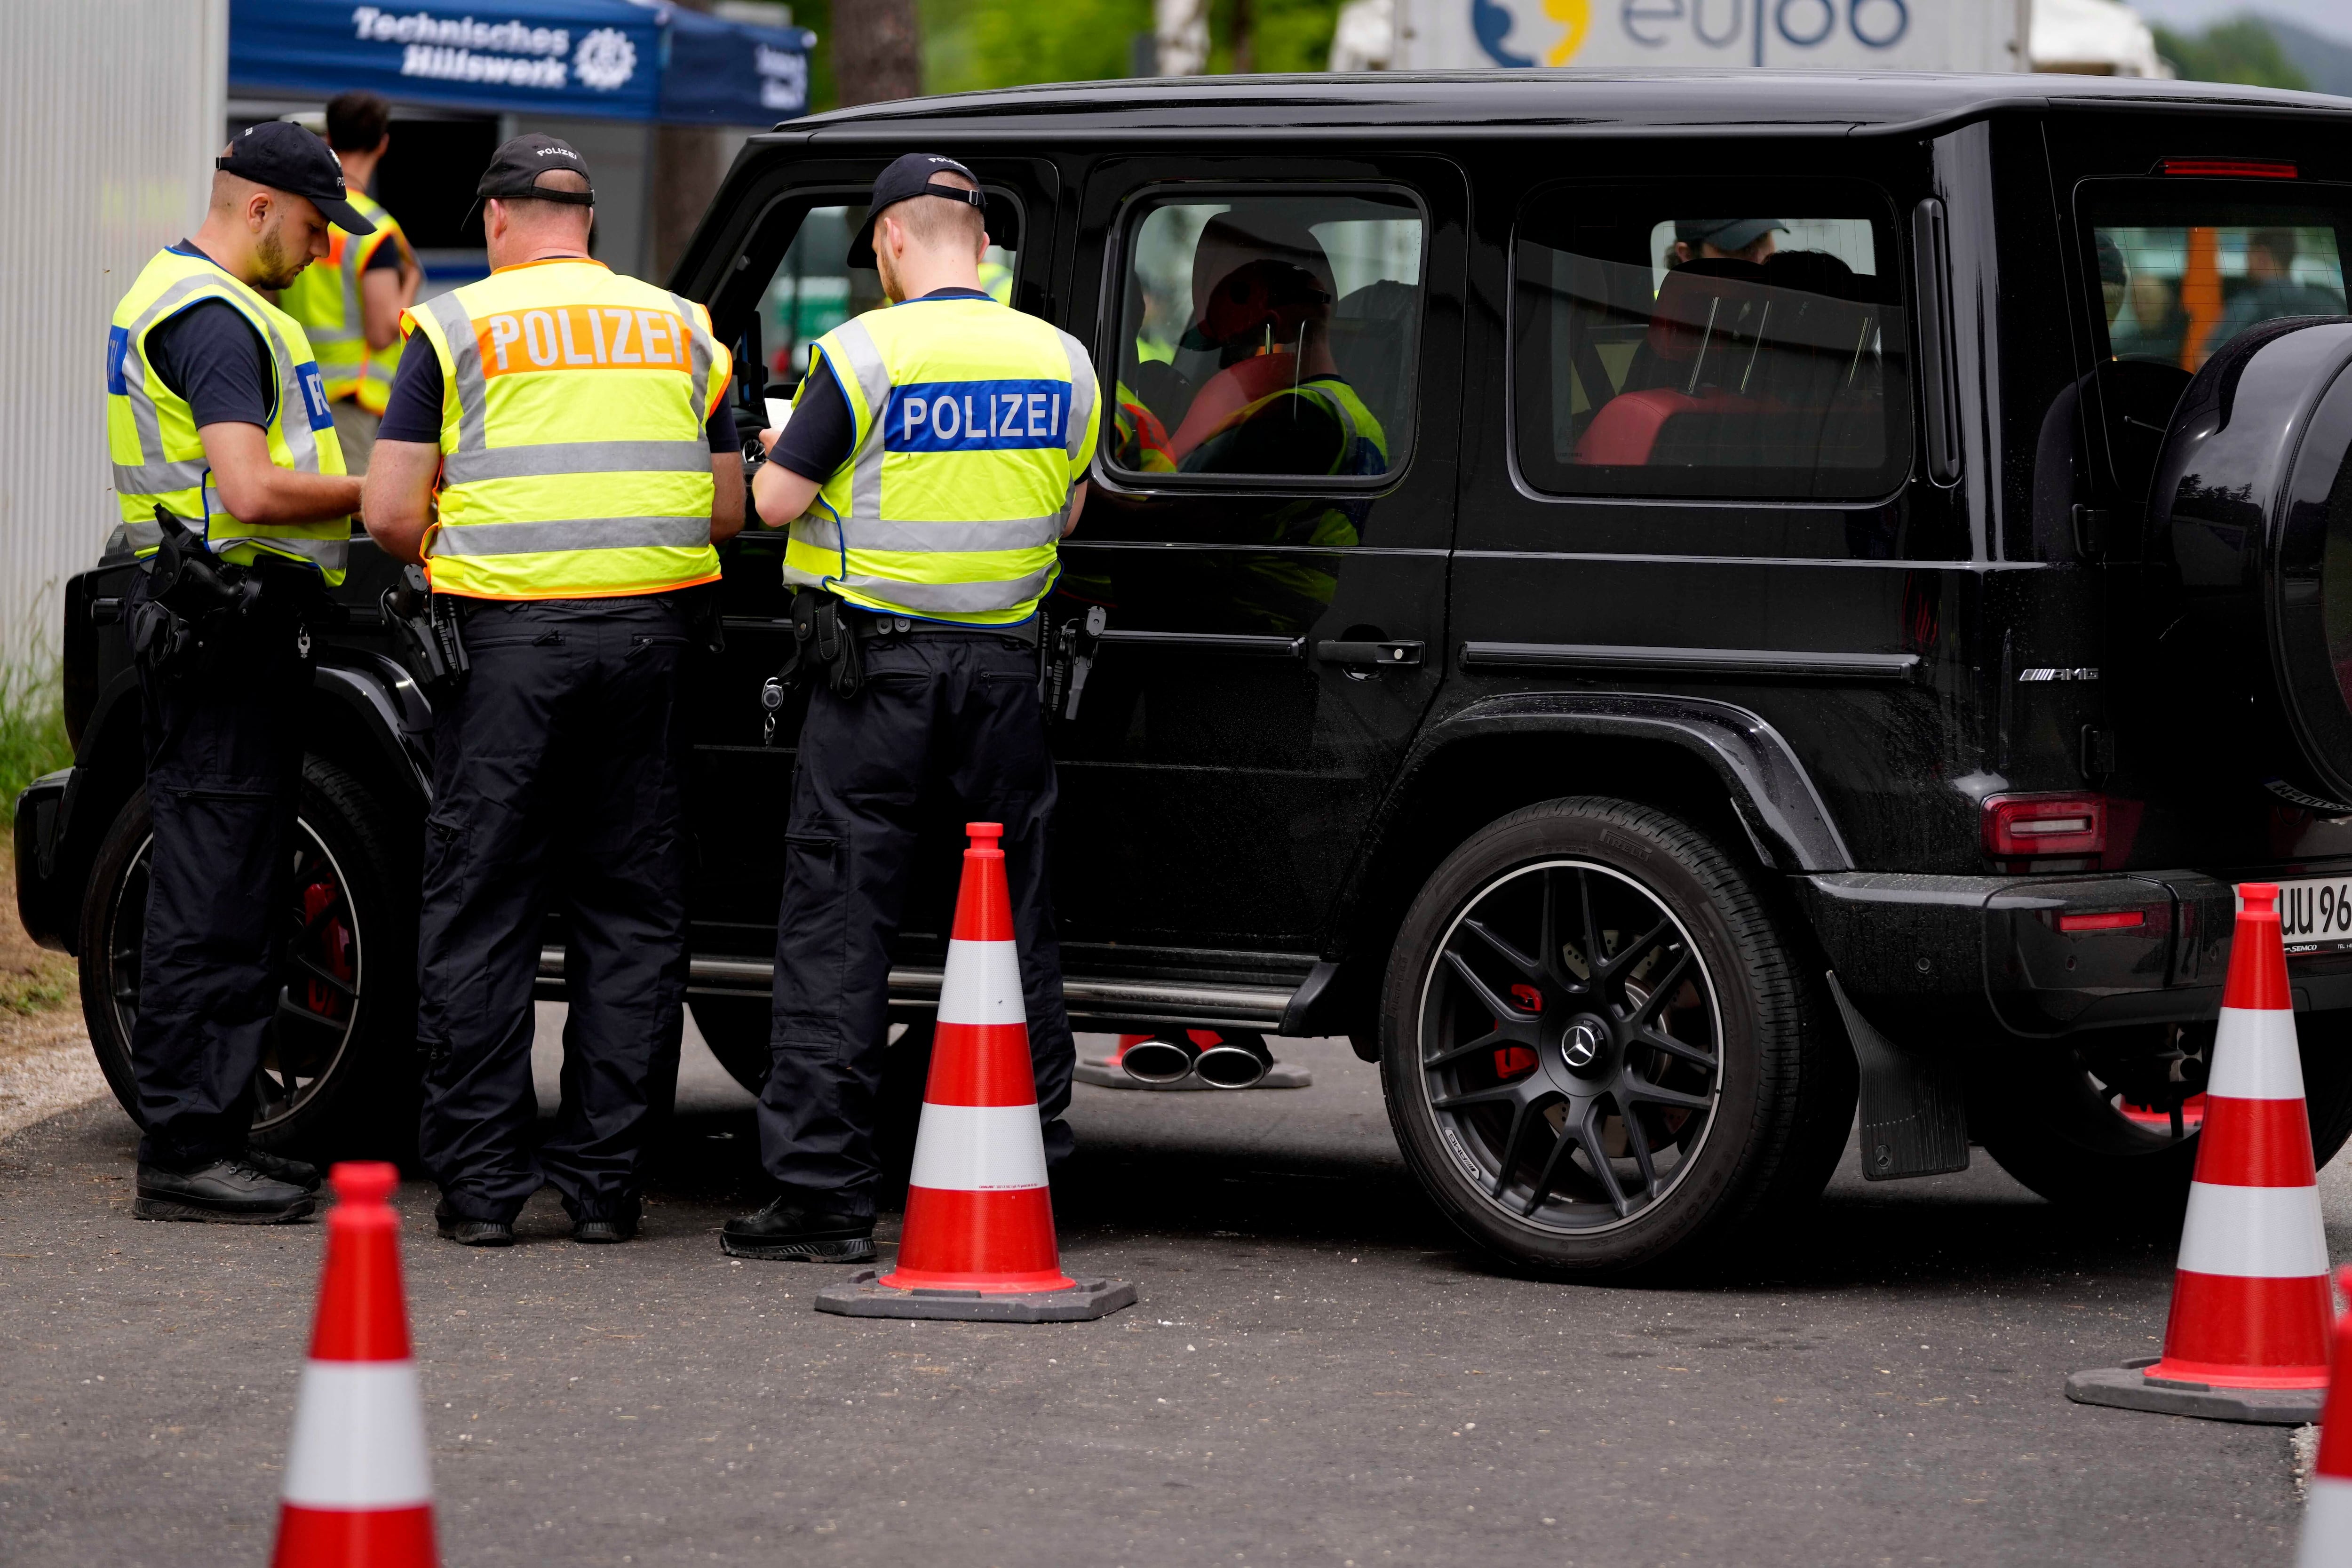 Alemania anuncia controles fronterizos durante la Eurocopa de fútbol por temor a posibles atentados